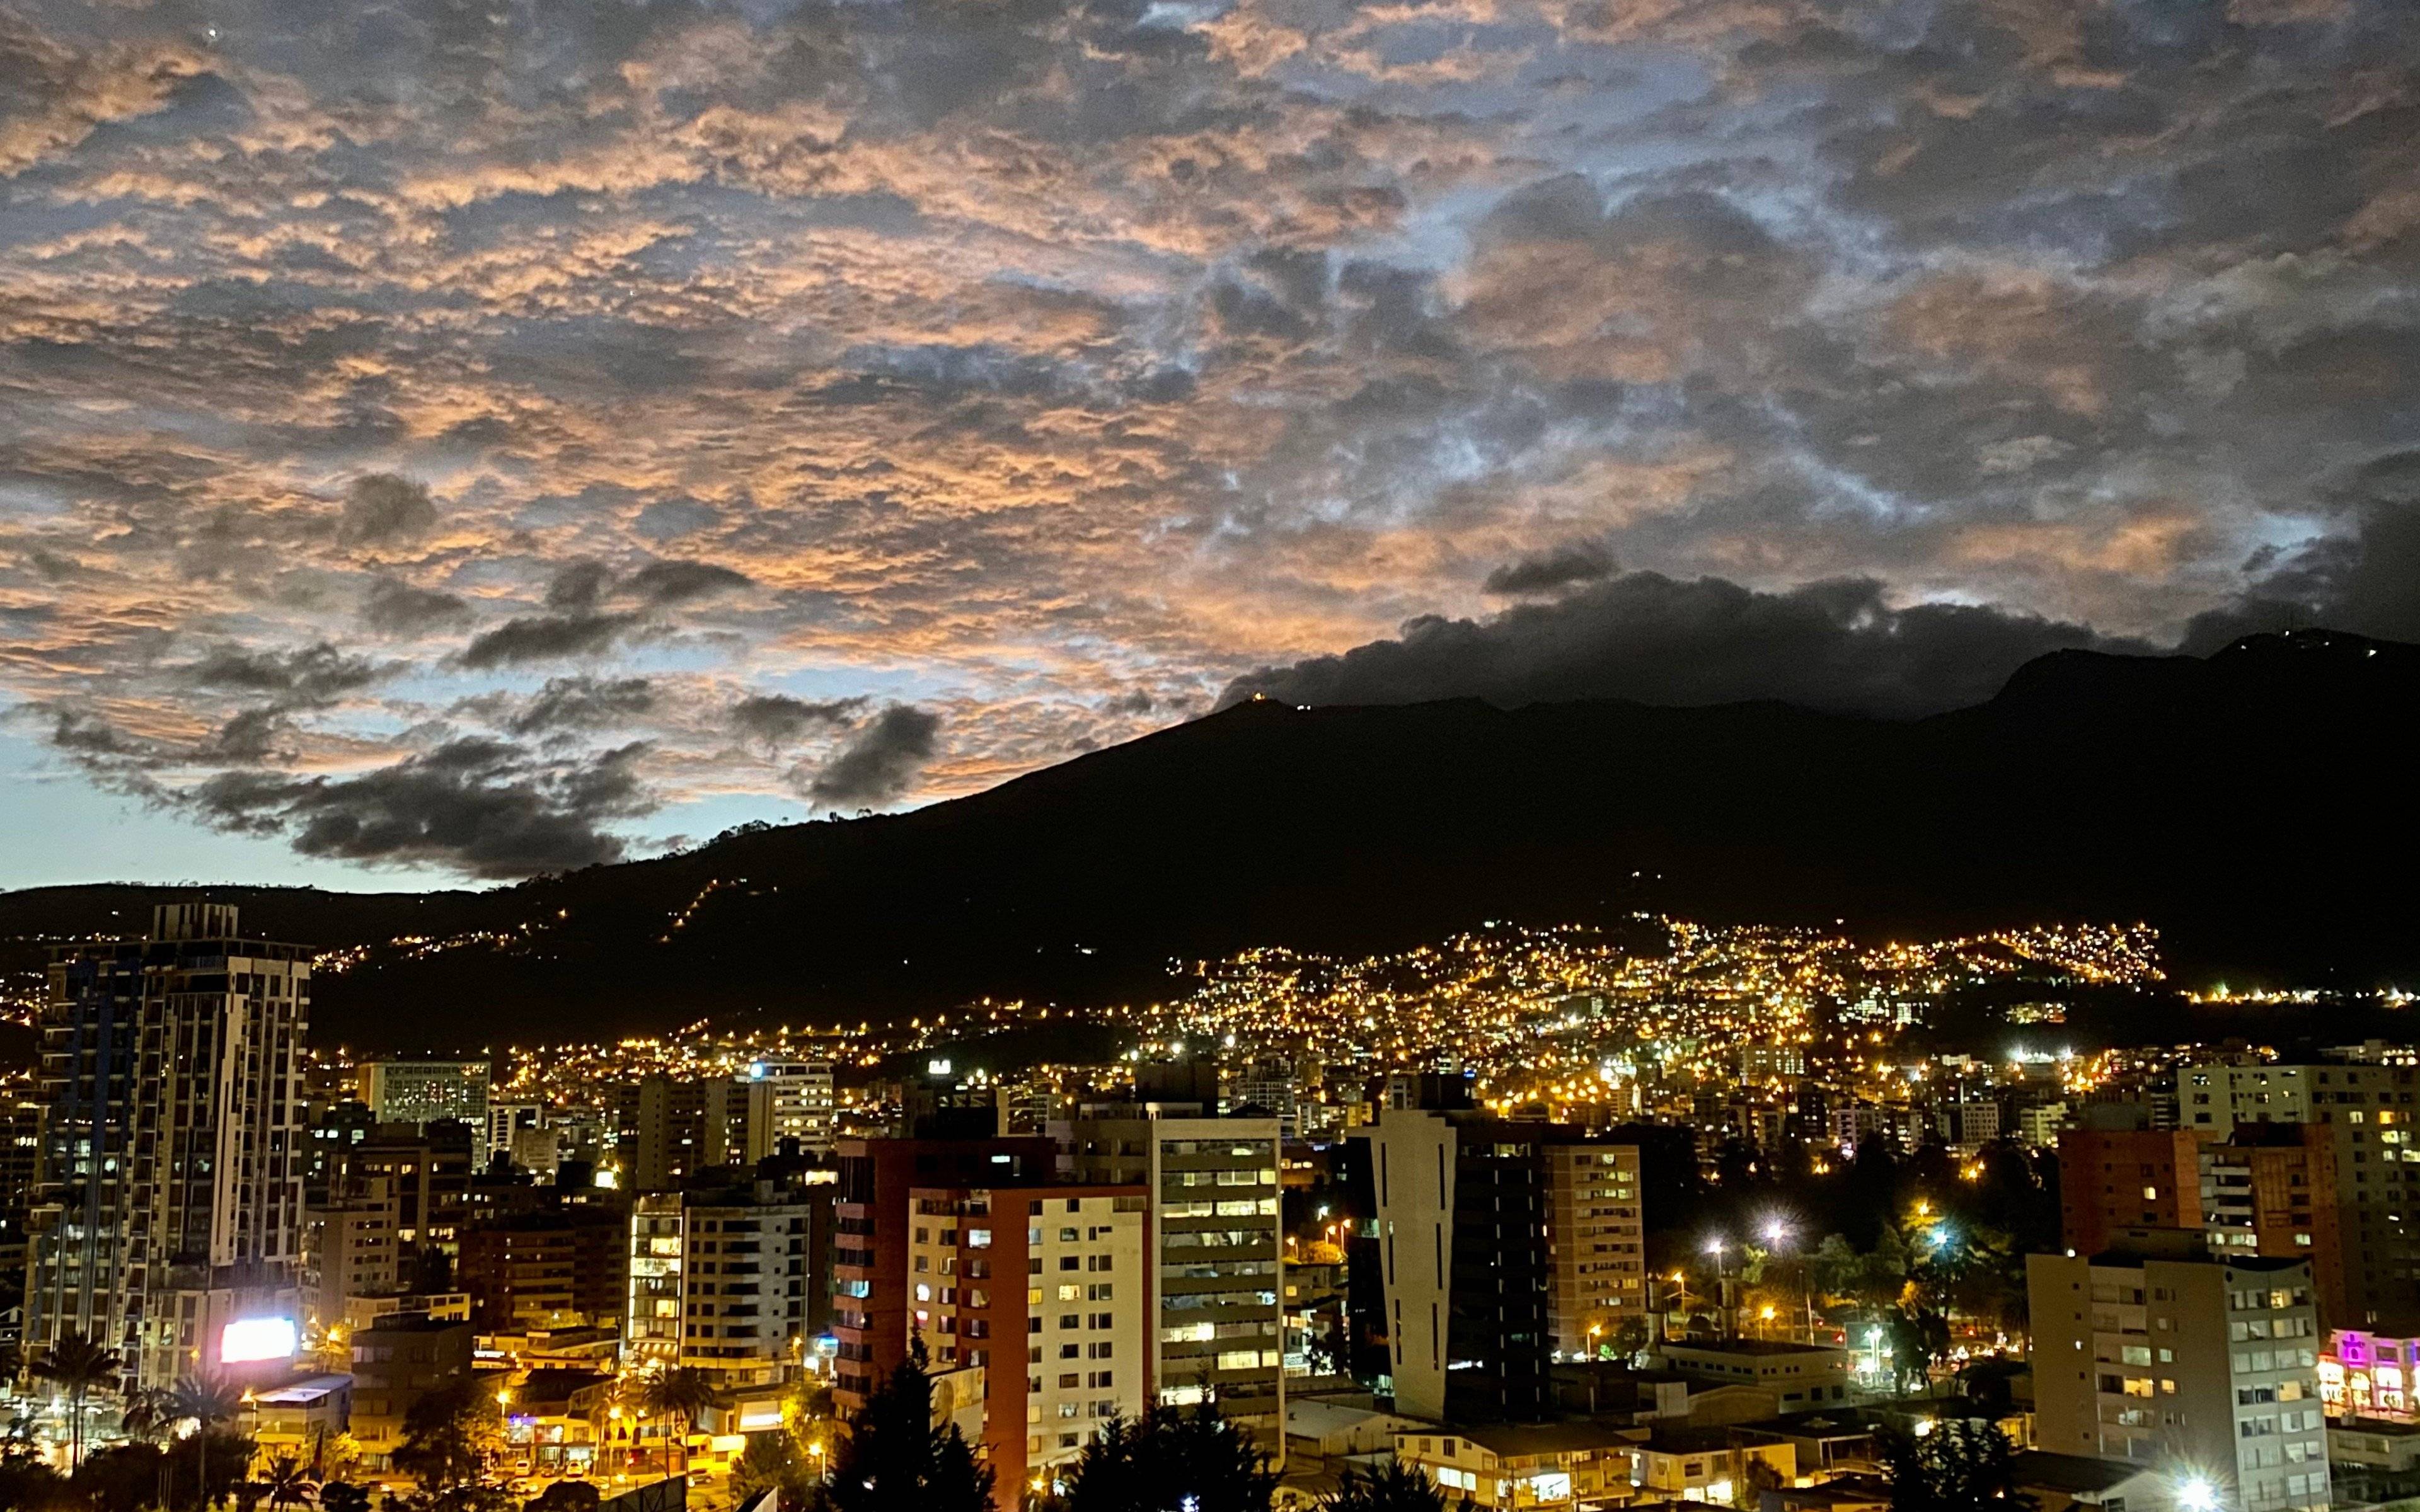 Arrivée à Quito